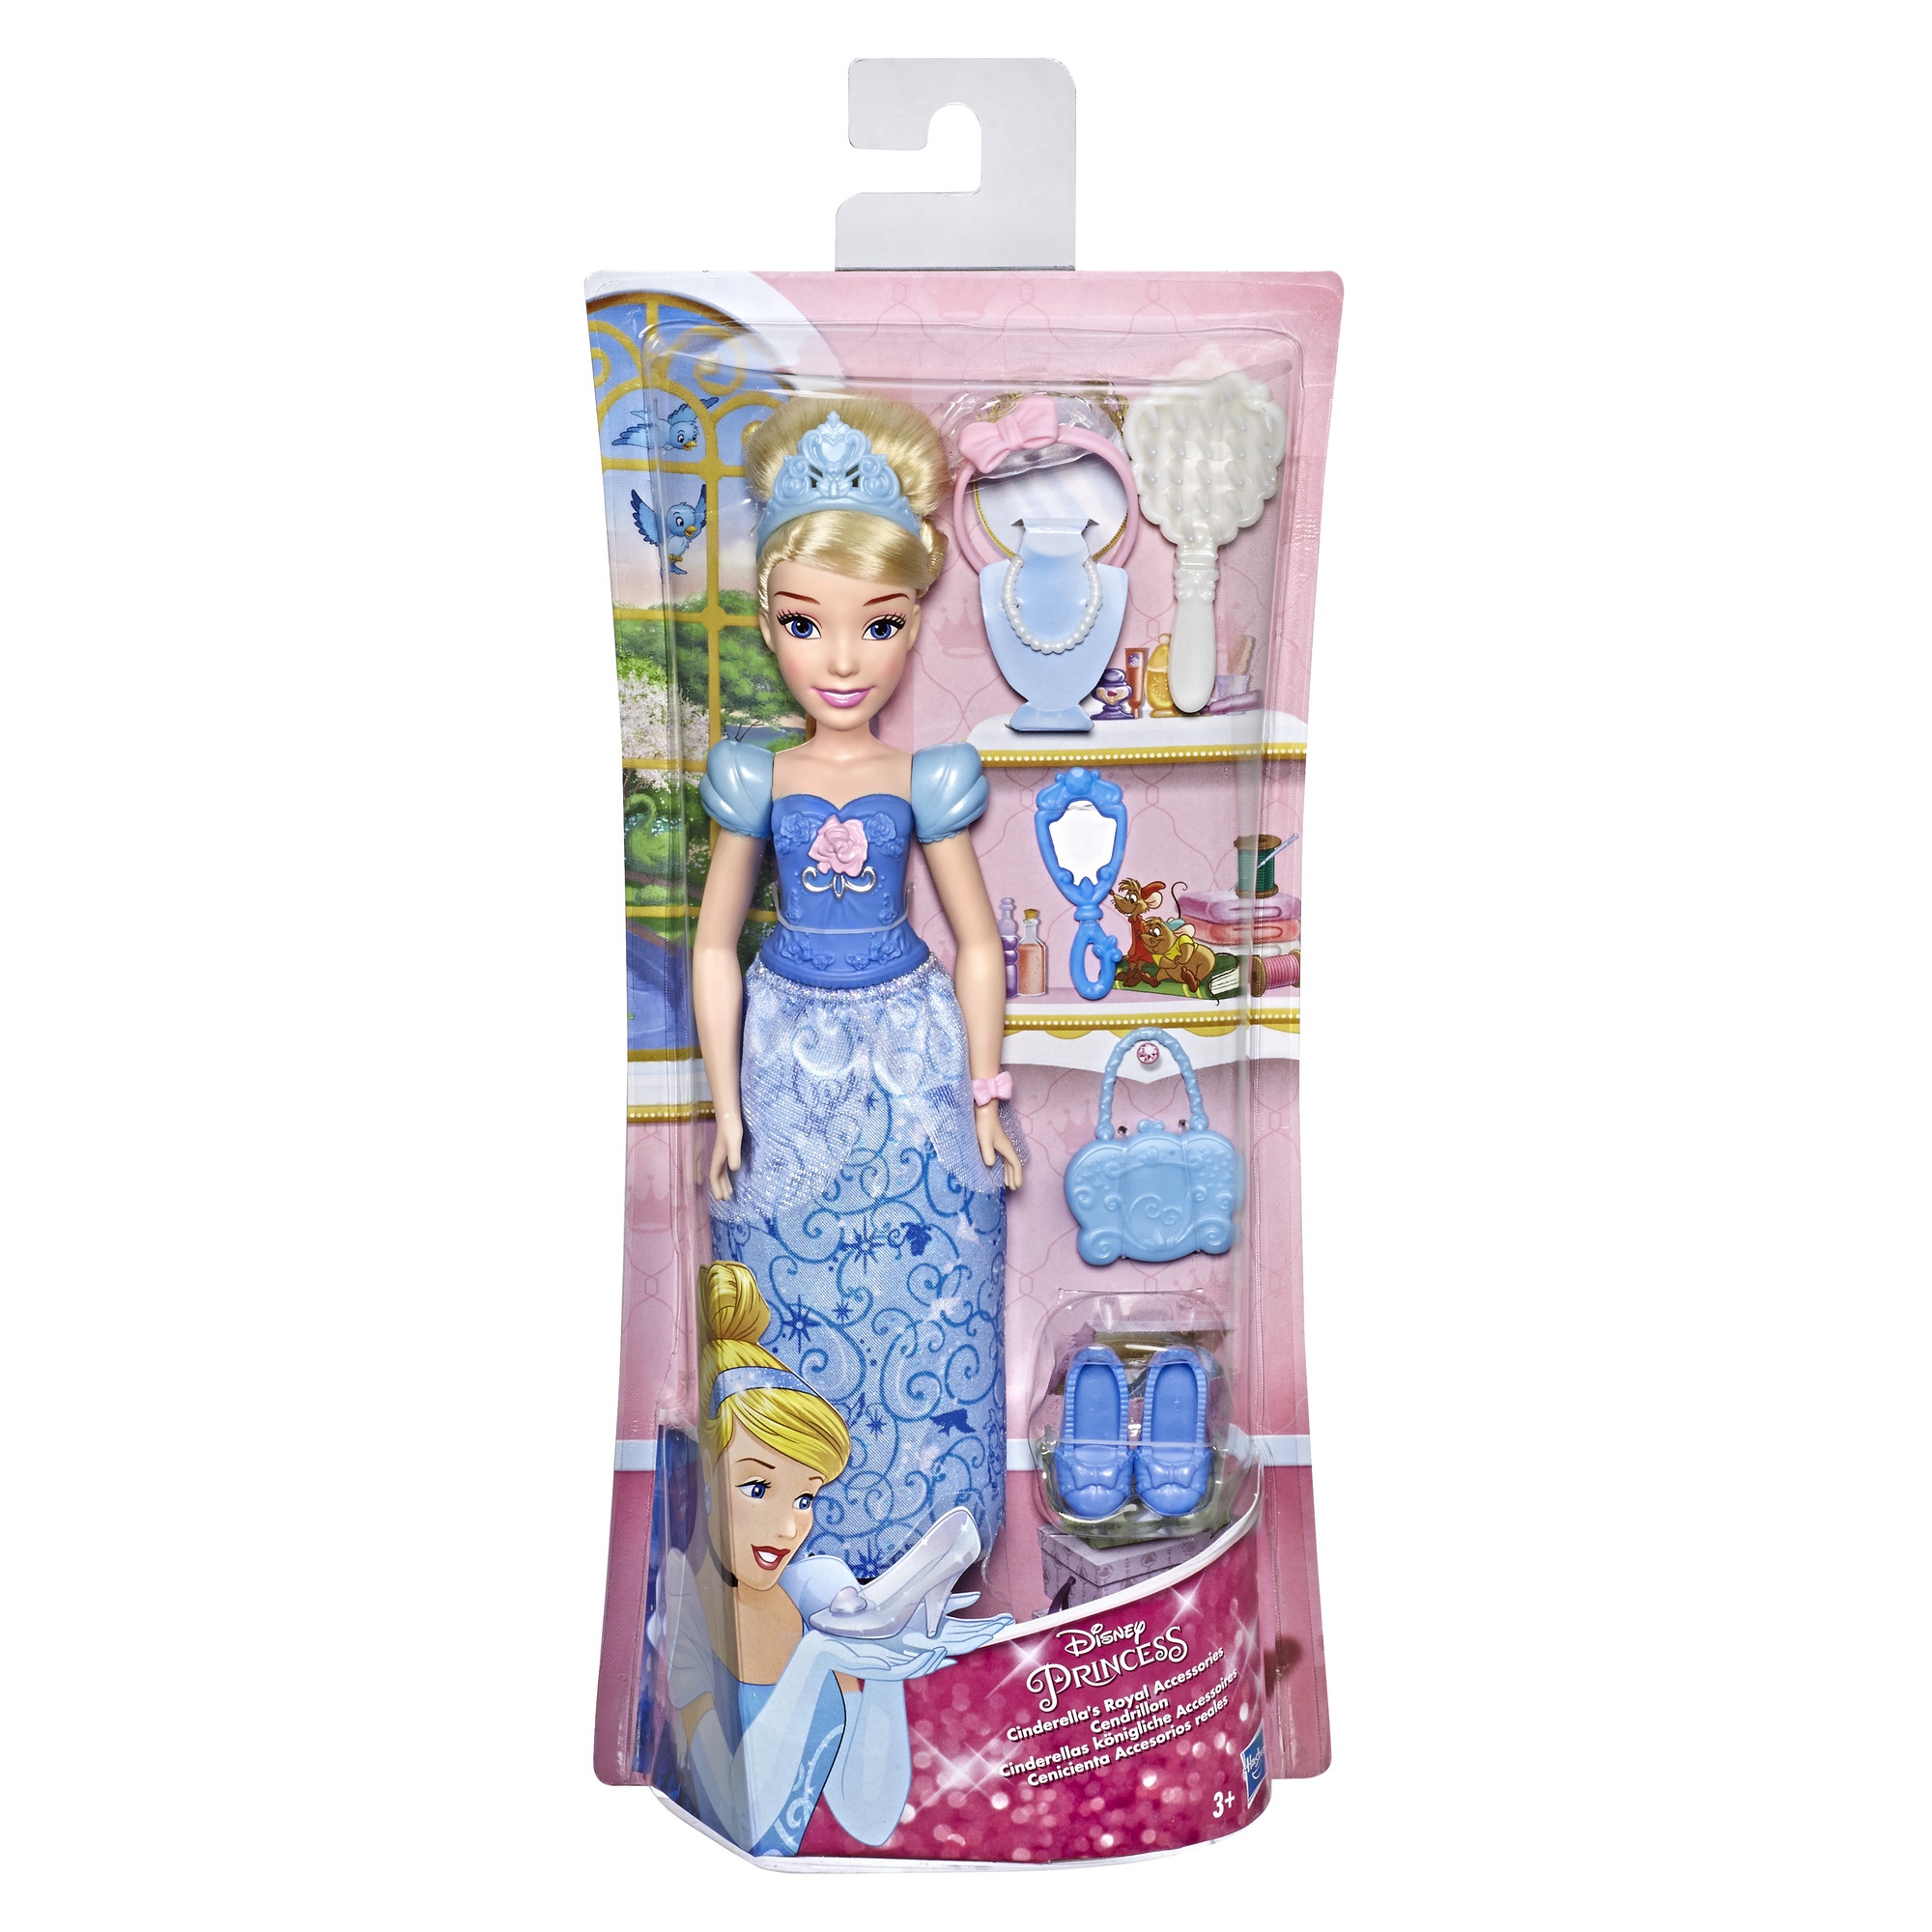 Disney Princess Rapunzel Ραπουνζέλ E3048  E3048EU6 - Disney Princess